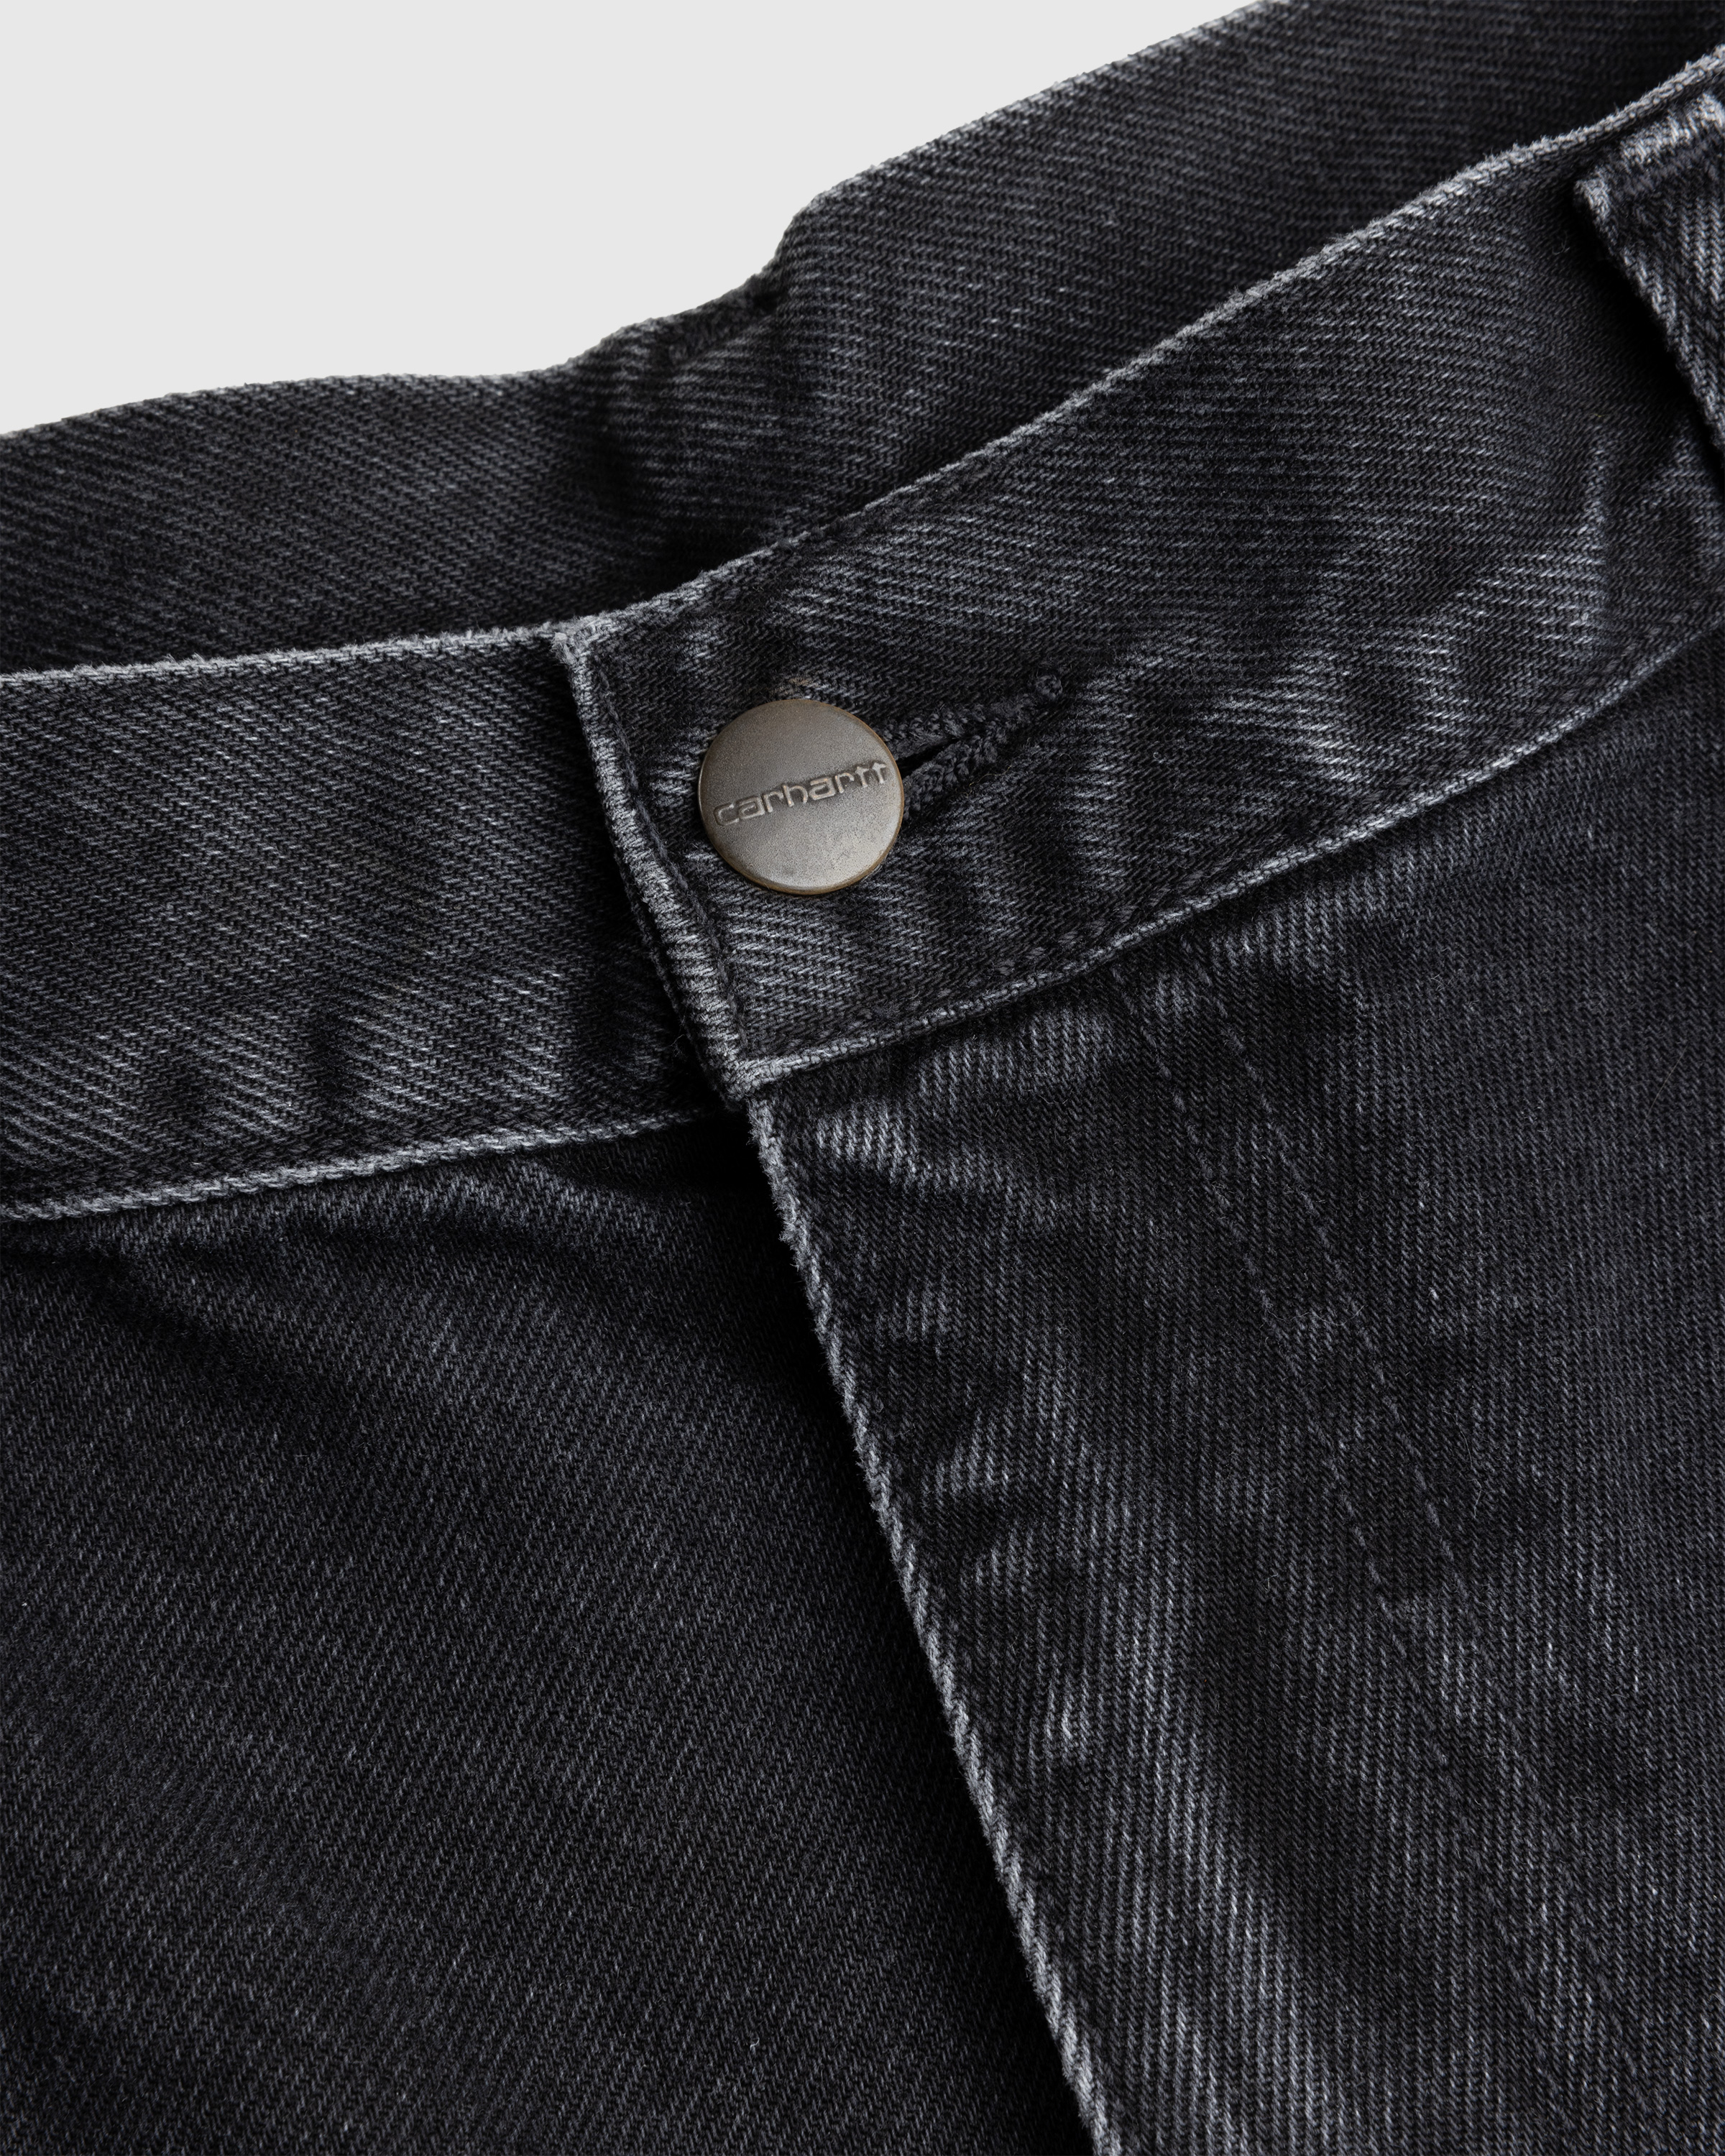 Carhartt – Single Knee Pant Black/Stone Washed - Active Shorts - Black - Image 6